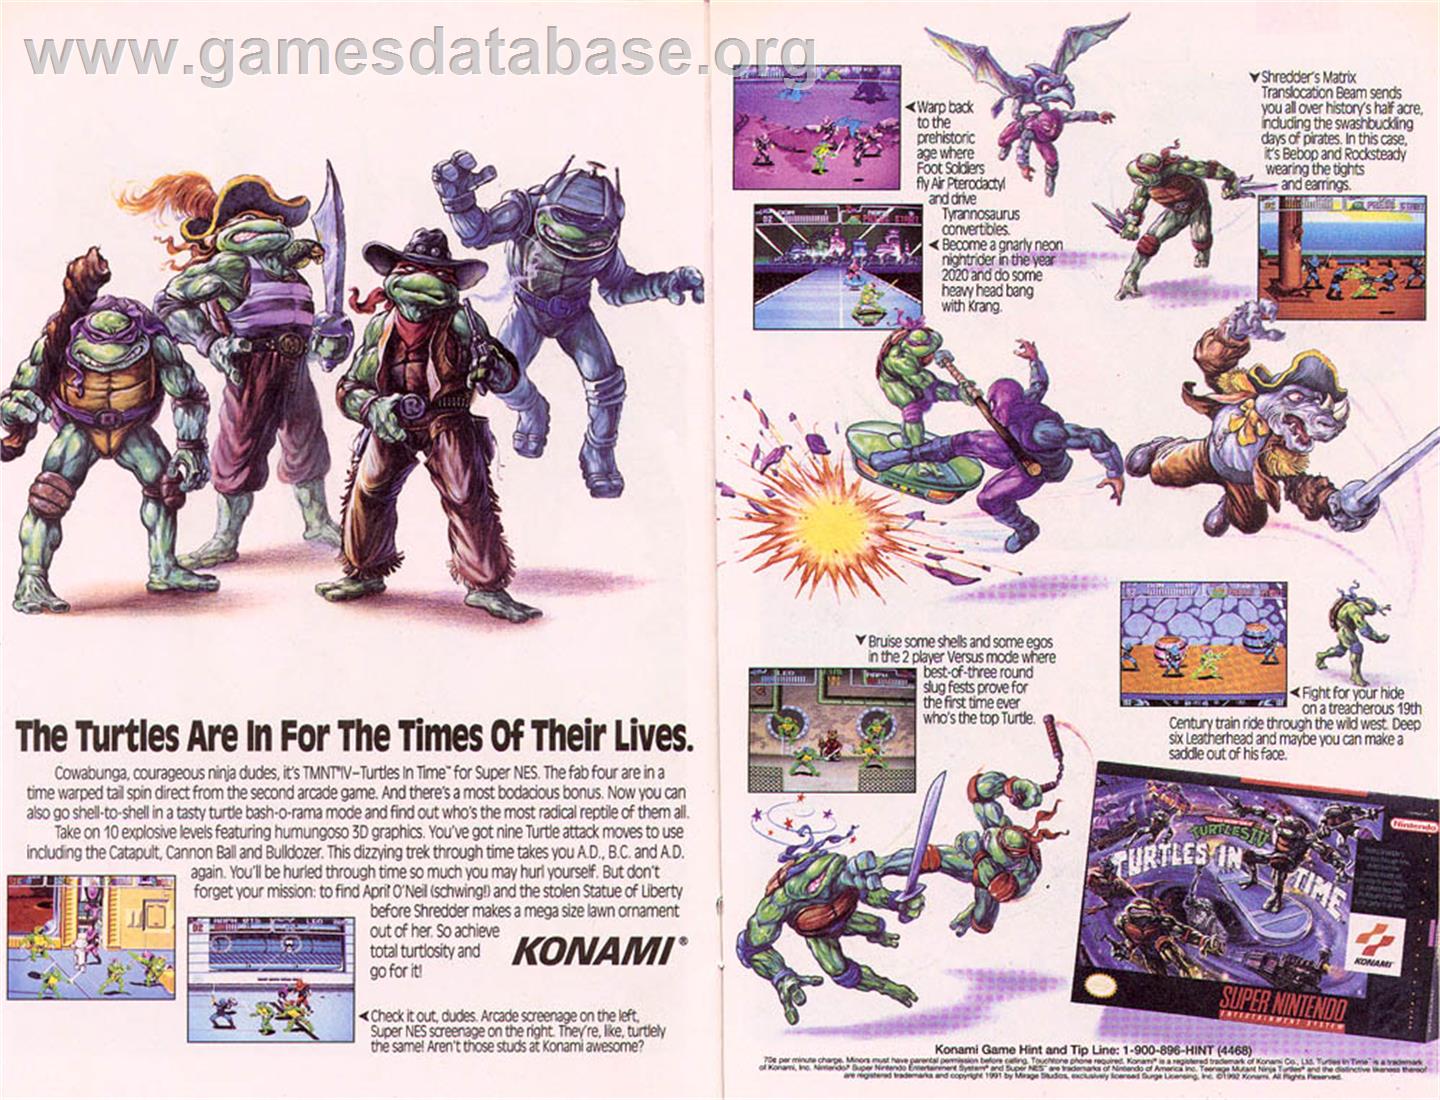 Teenage Mutant Ninja Turtles IV: Turtles in Time - Nintendo SNES - Artwork - Advert